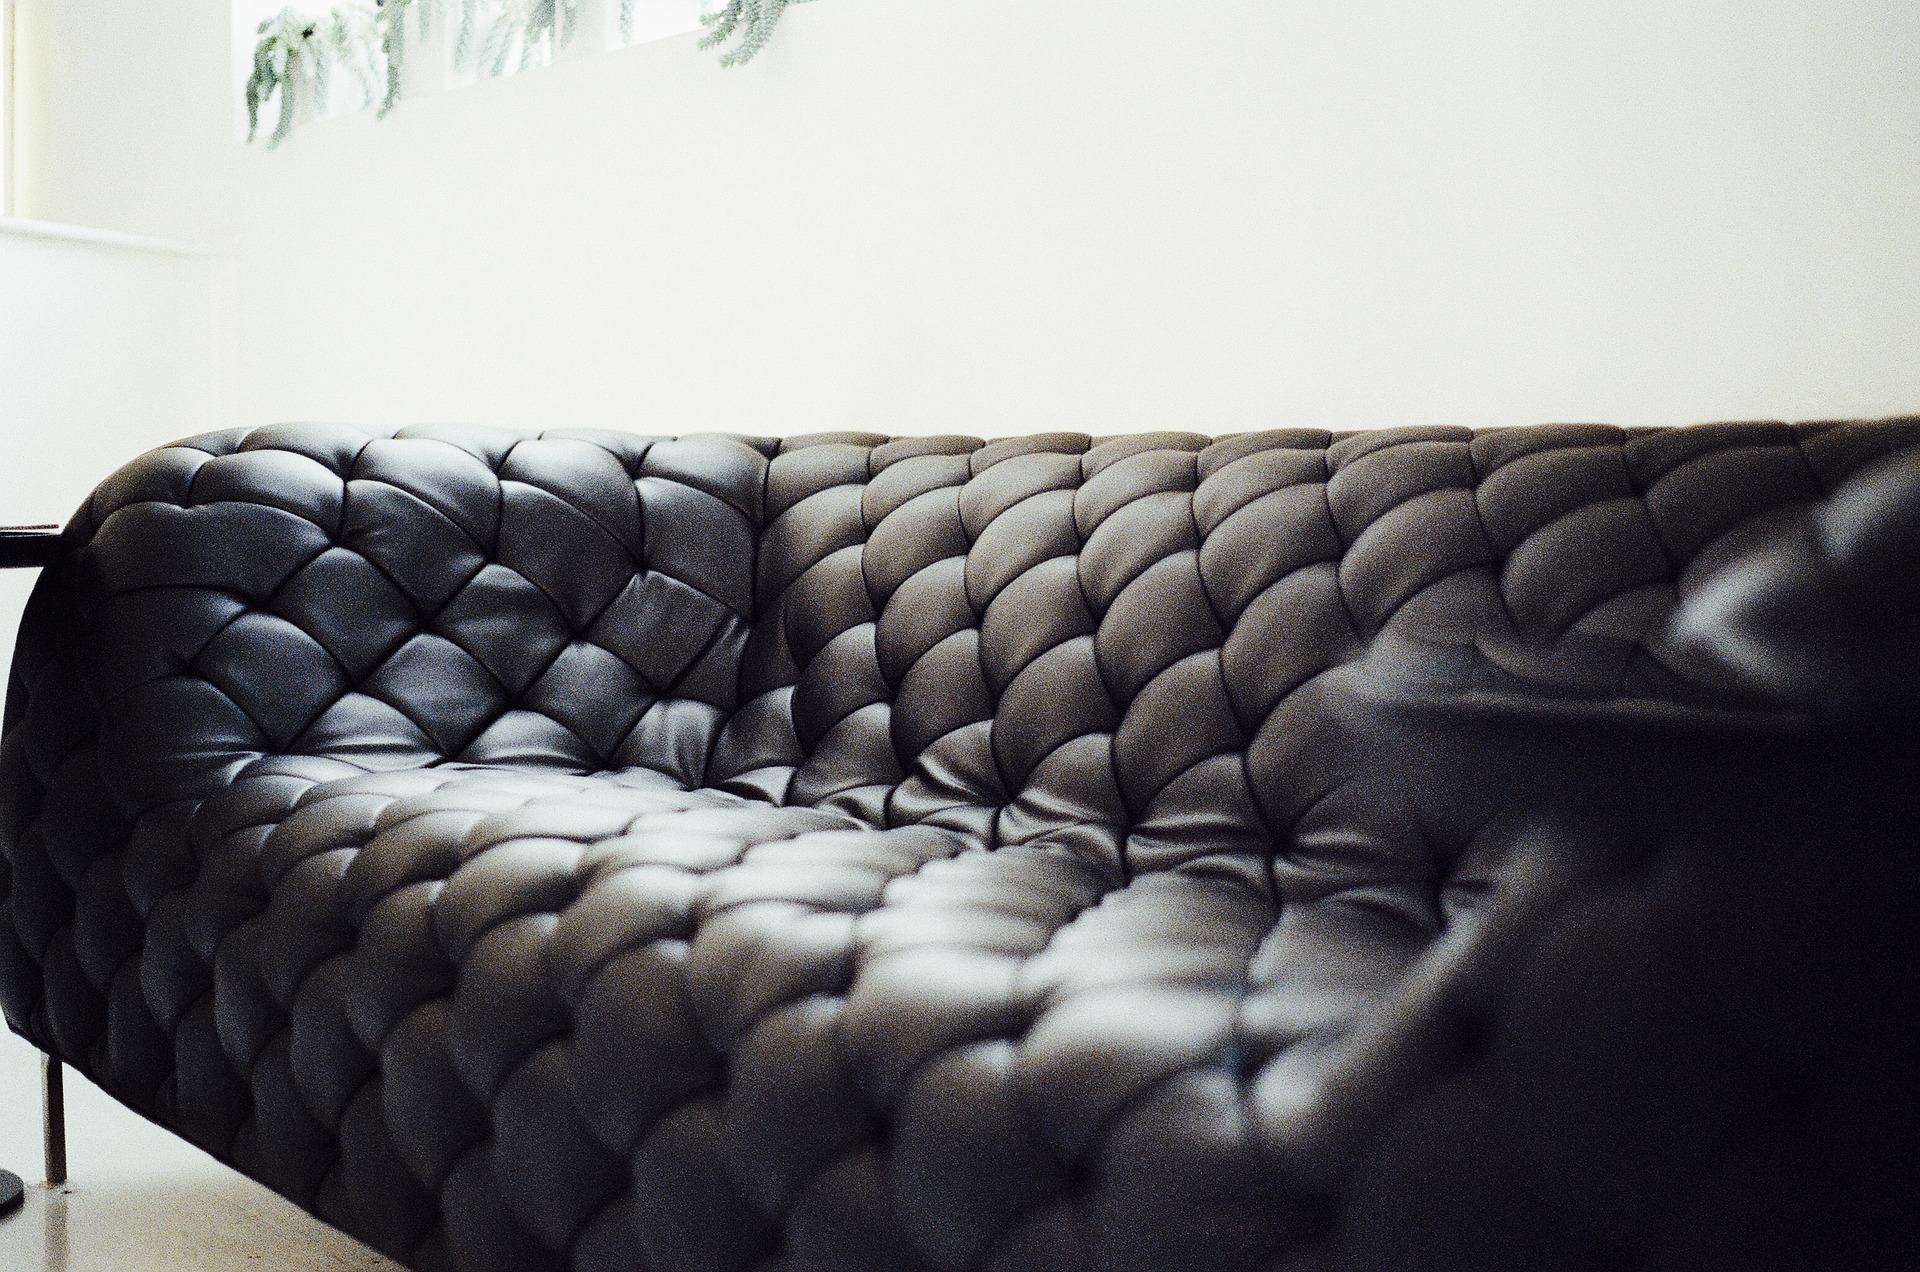 Comment nettoyer efficacement un canapé en cuir ?